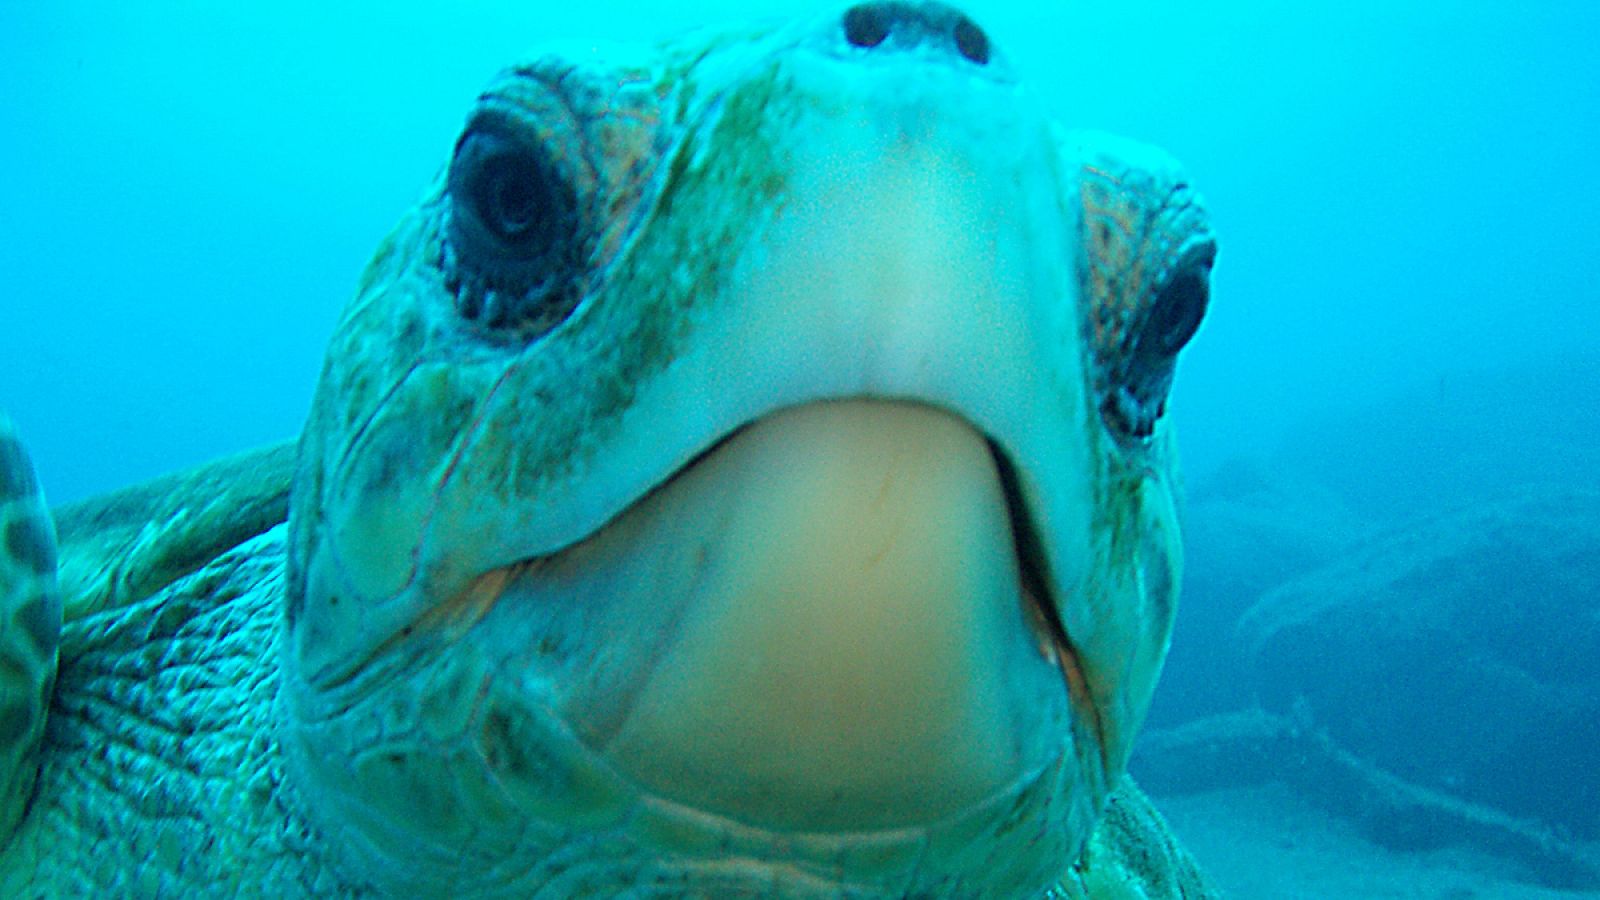 El estudio ha hecho un seguimiento a lo largo de 13 años a 24 ejemplares juveniles de tortugas Caretta caretta.